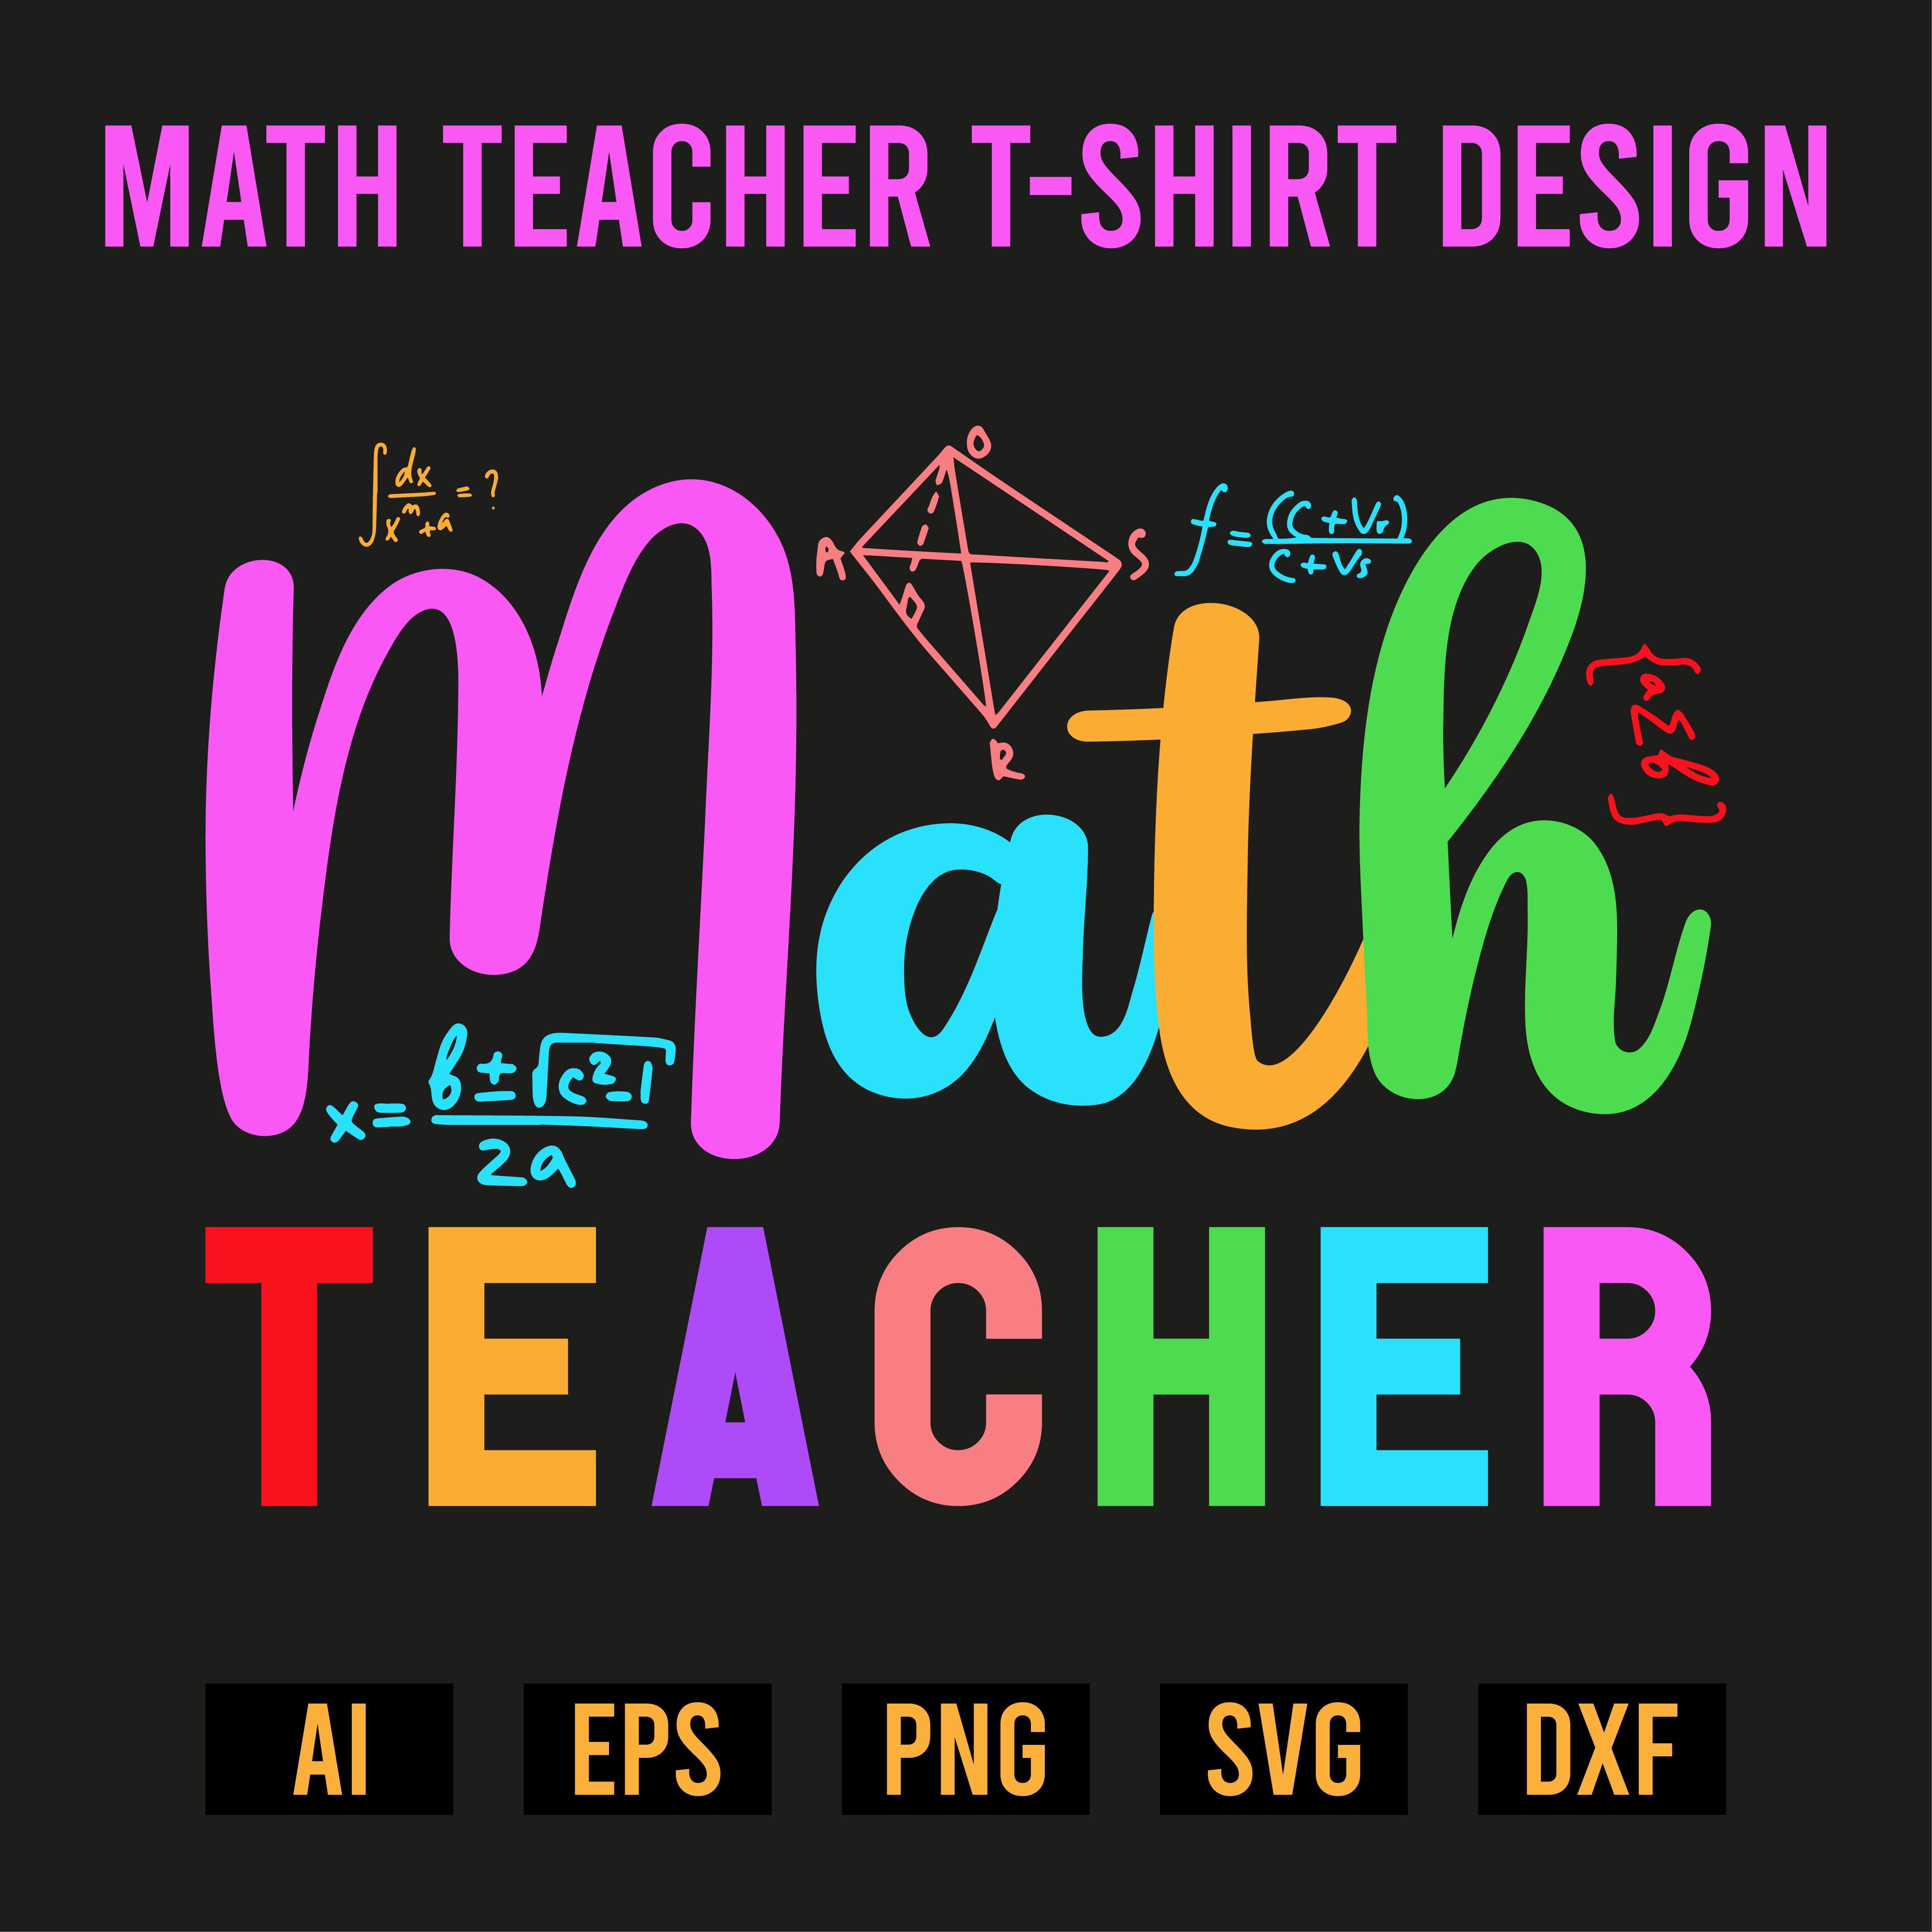 Math Teacher T-Shirt Design cover image.